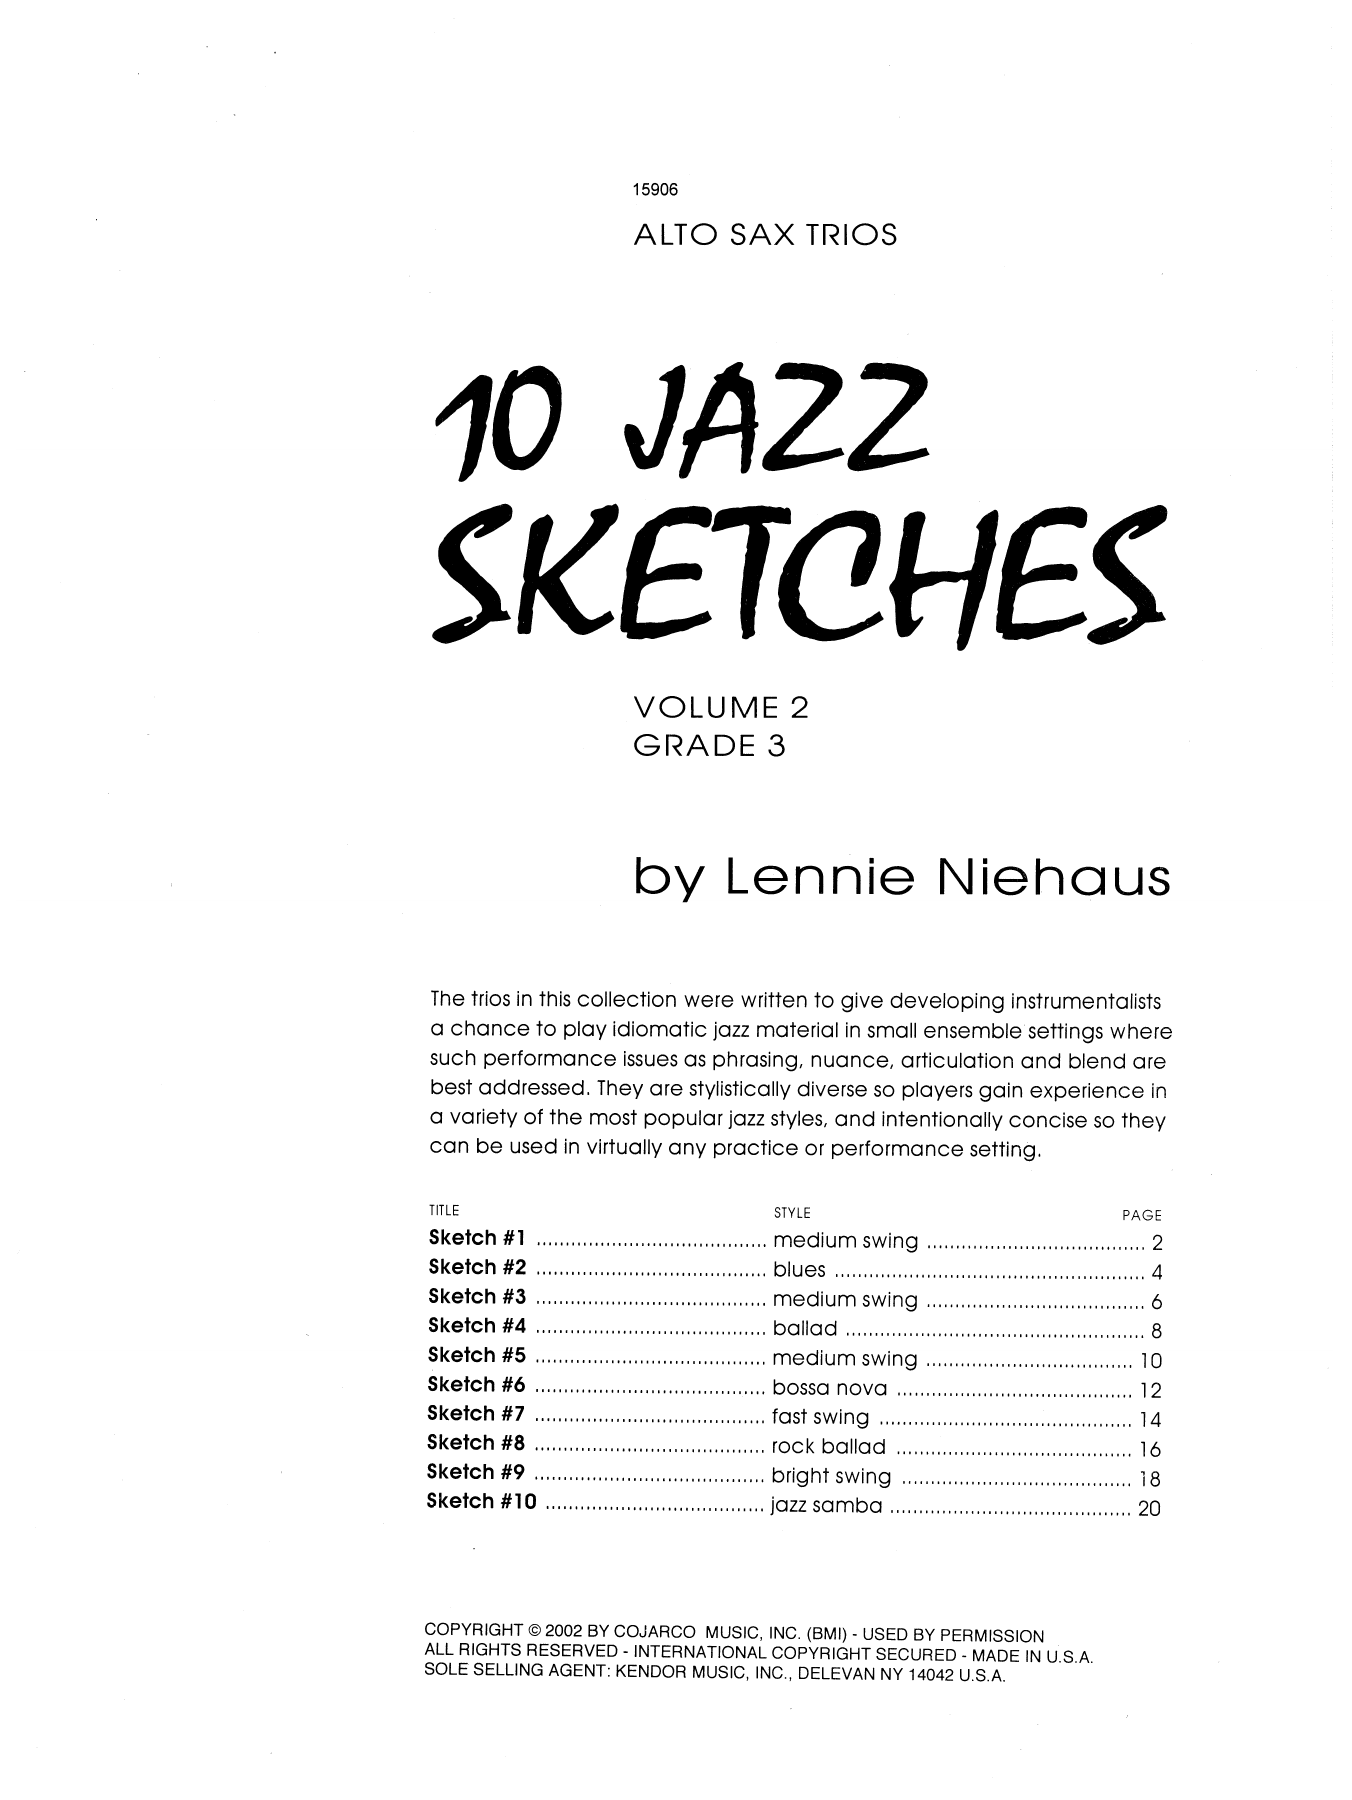 Download Lennie Niehaus 10 Jazz Sketches, Volume 2 (altos) Sheet Music